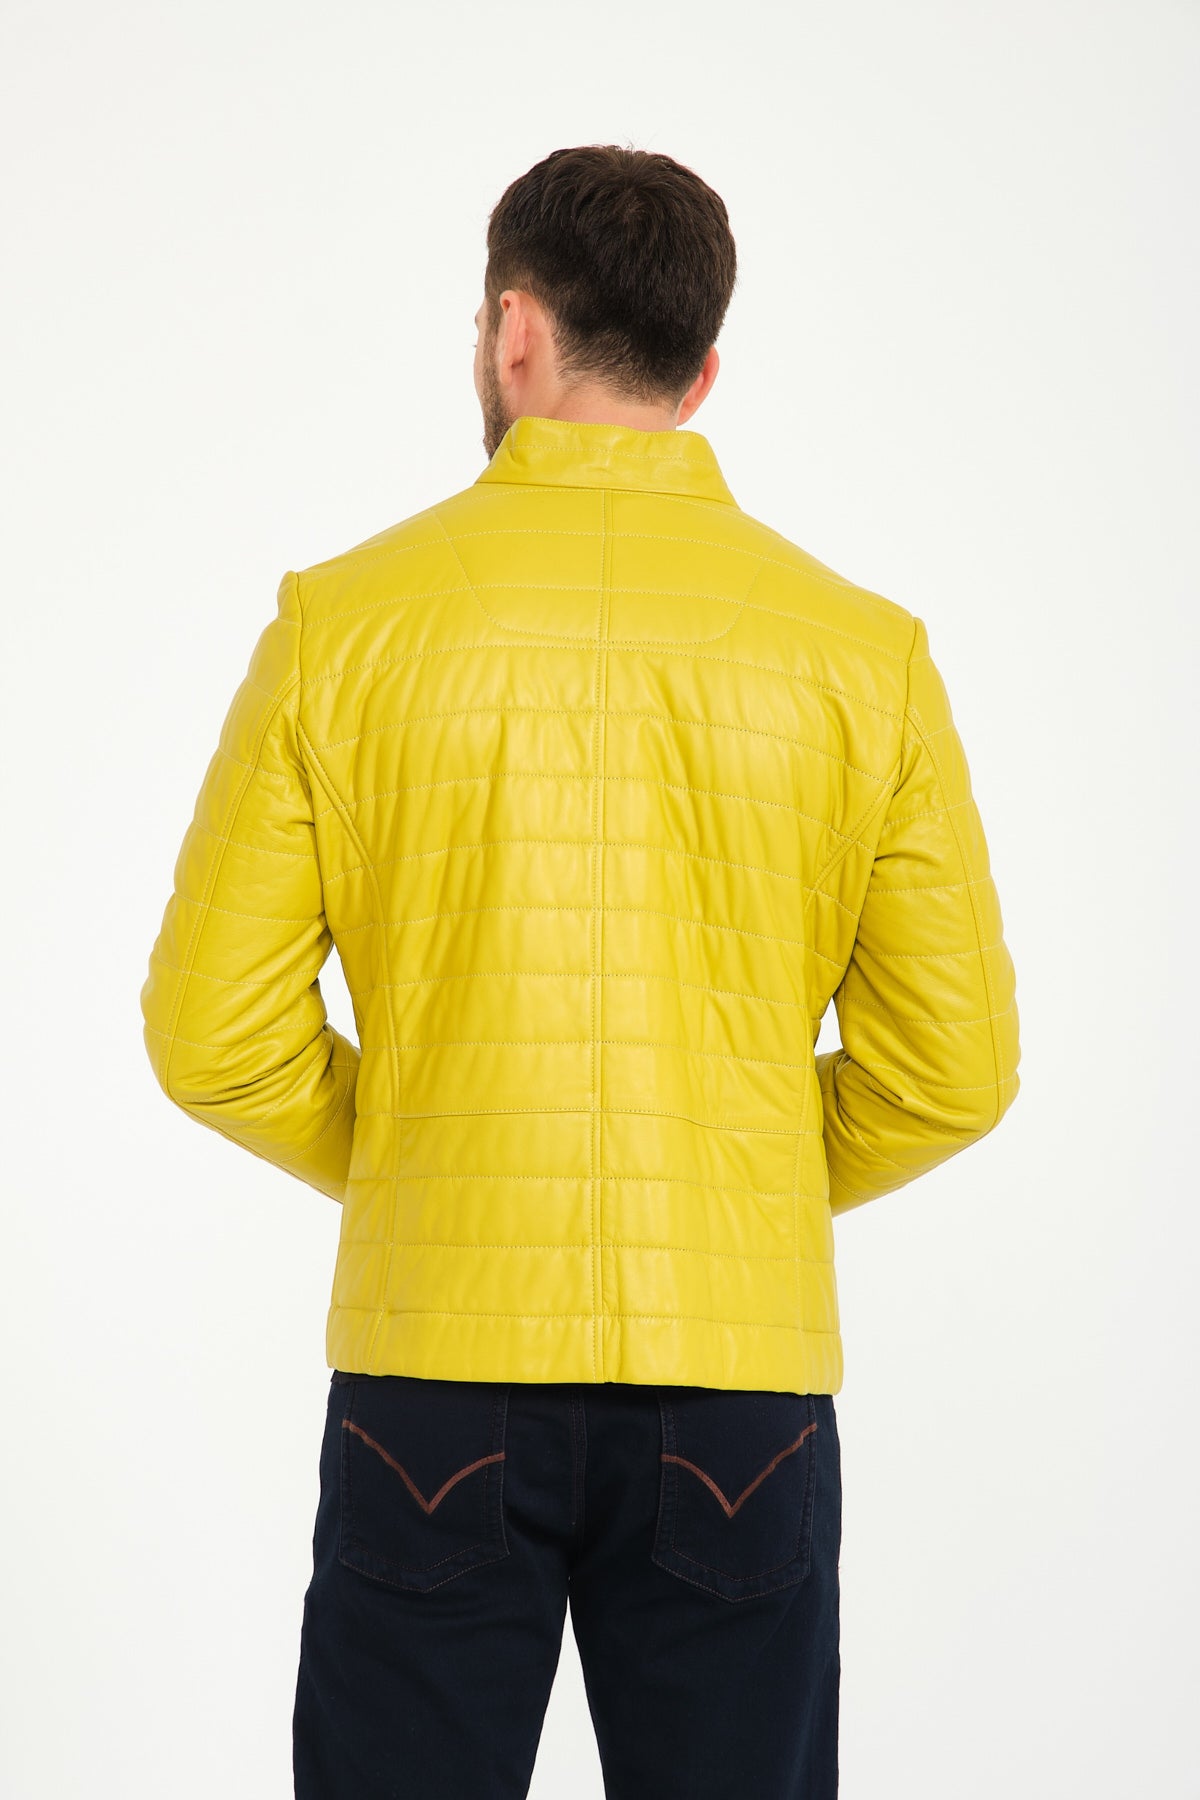 Mowalola: SSENSE Canada Exclusive Yellow Leather Kumbi Jacket